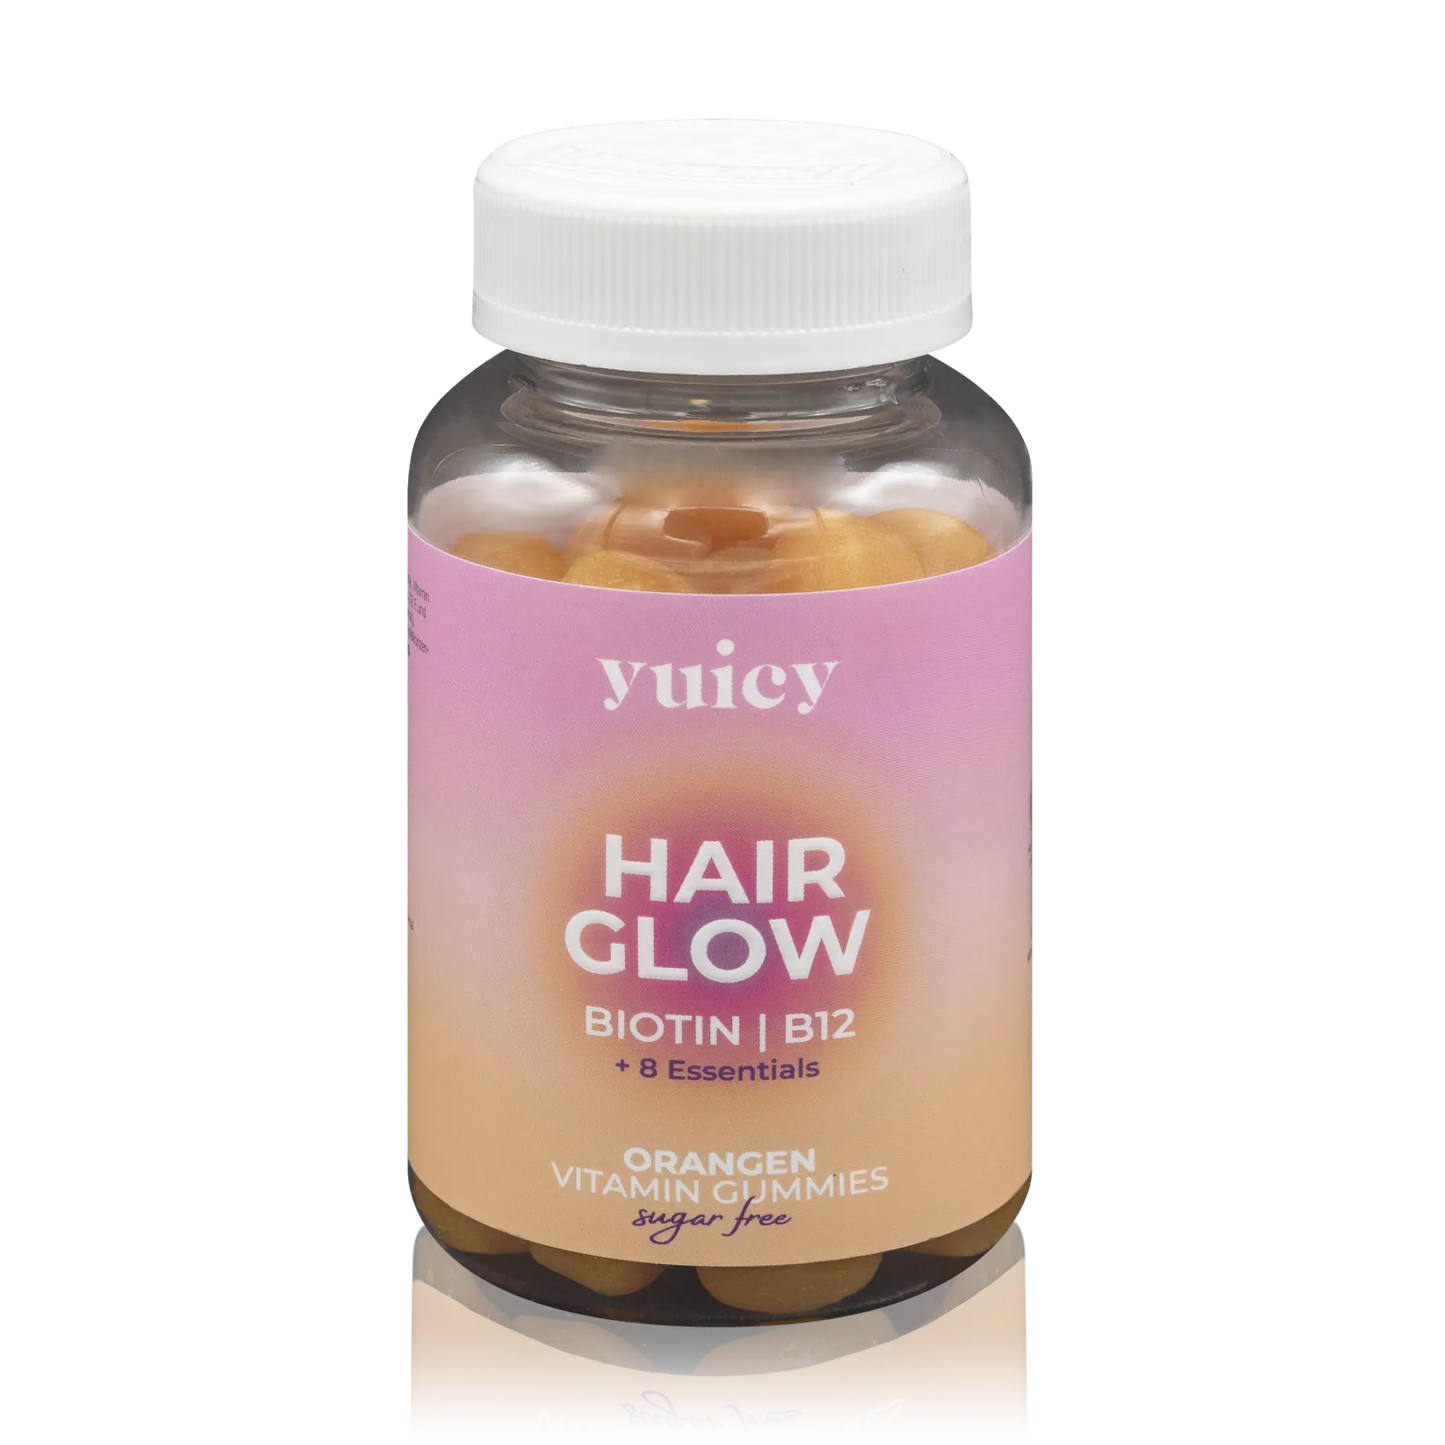 Yuicy Hair Glow Orangen Vitamin Fruchtgummis mit Biotin, B12 und 8 Essentials - zuckerfrei (60 St.)